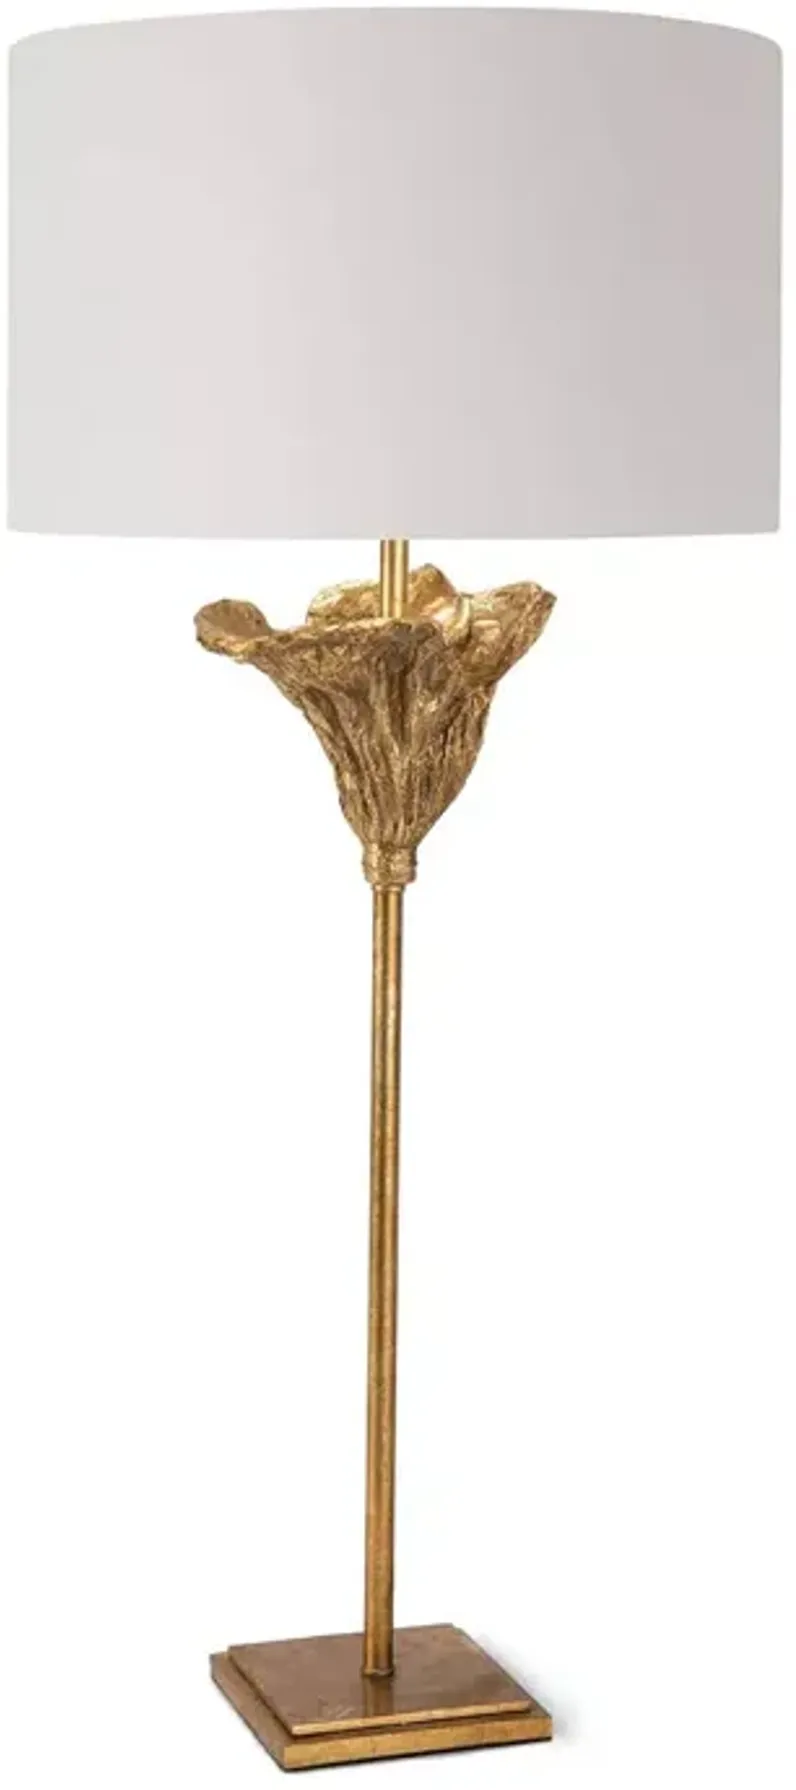 Regina Andrew Design Monet Table Lamp